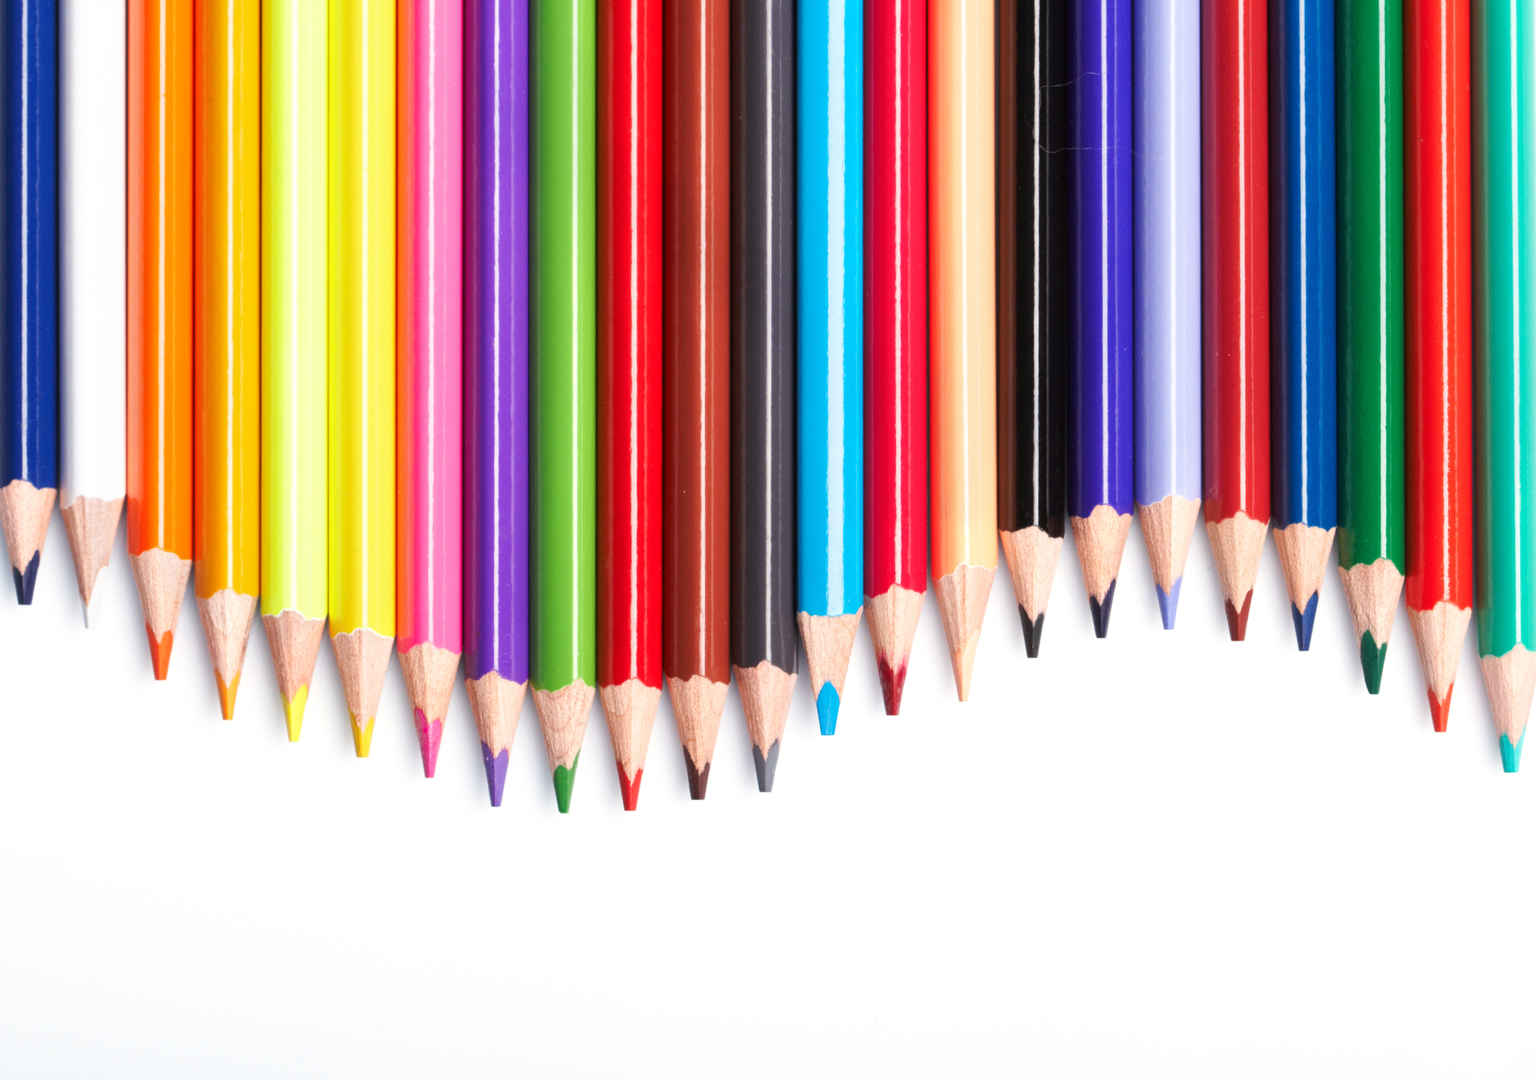 整齐排列的笔尖弯曲的彩色铅笔壁纸-